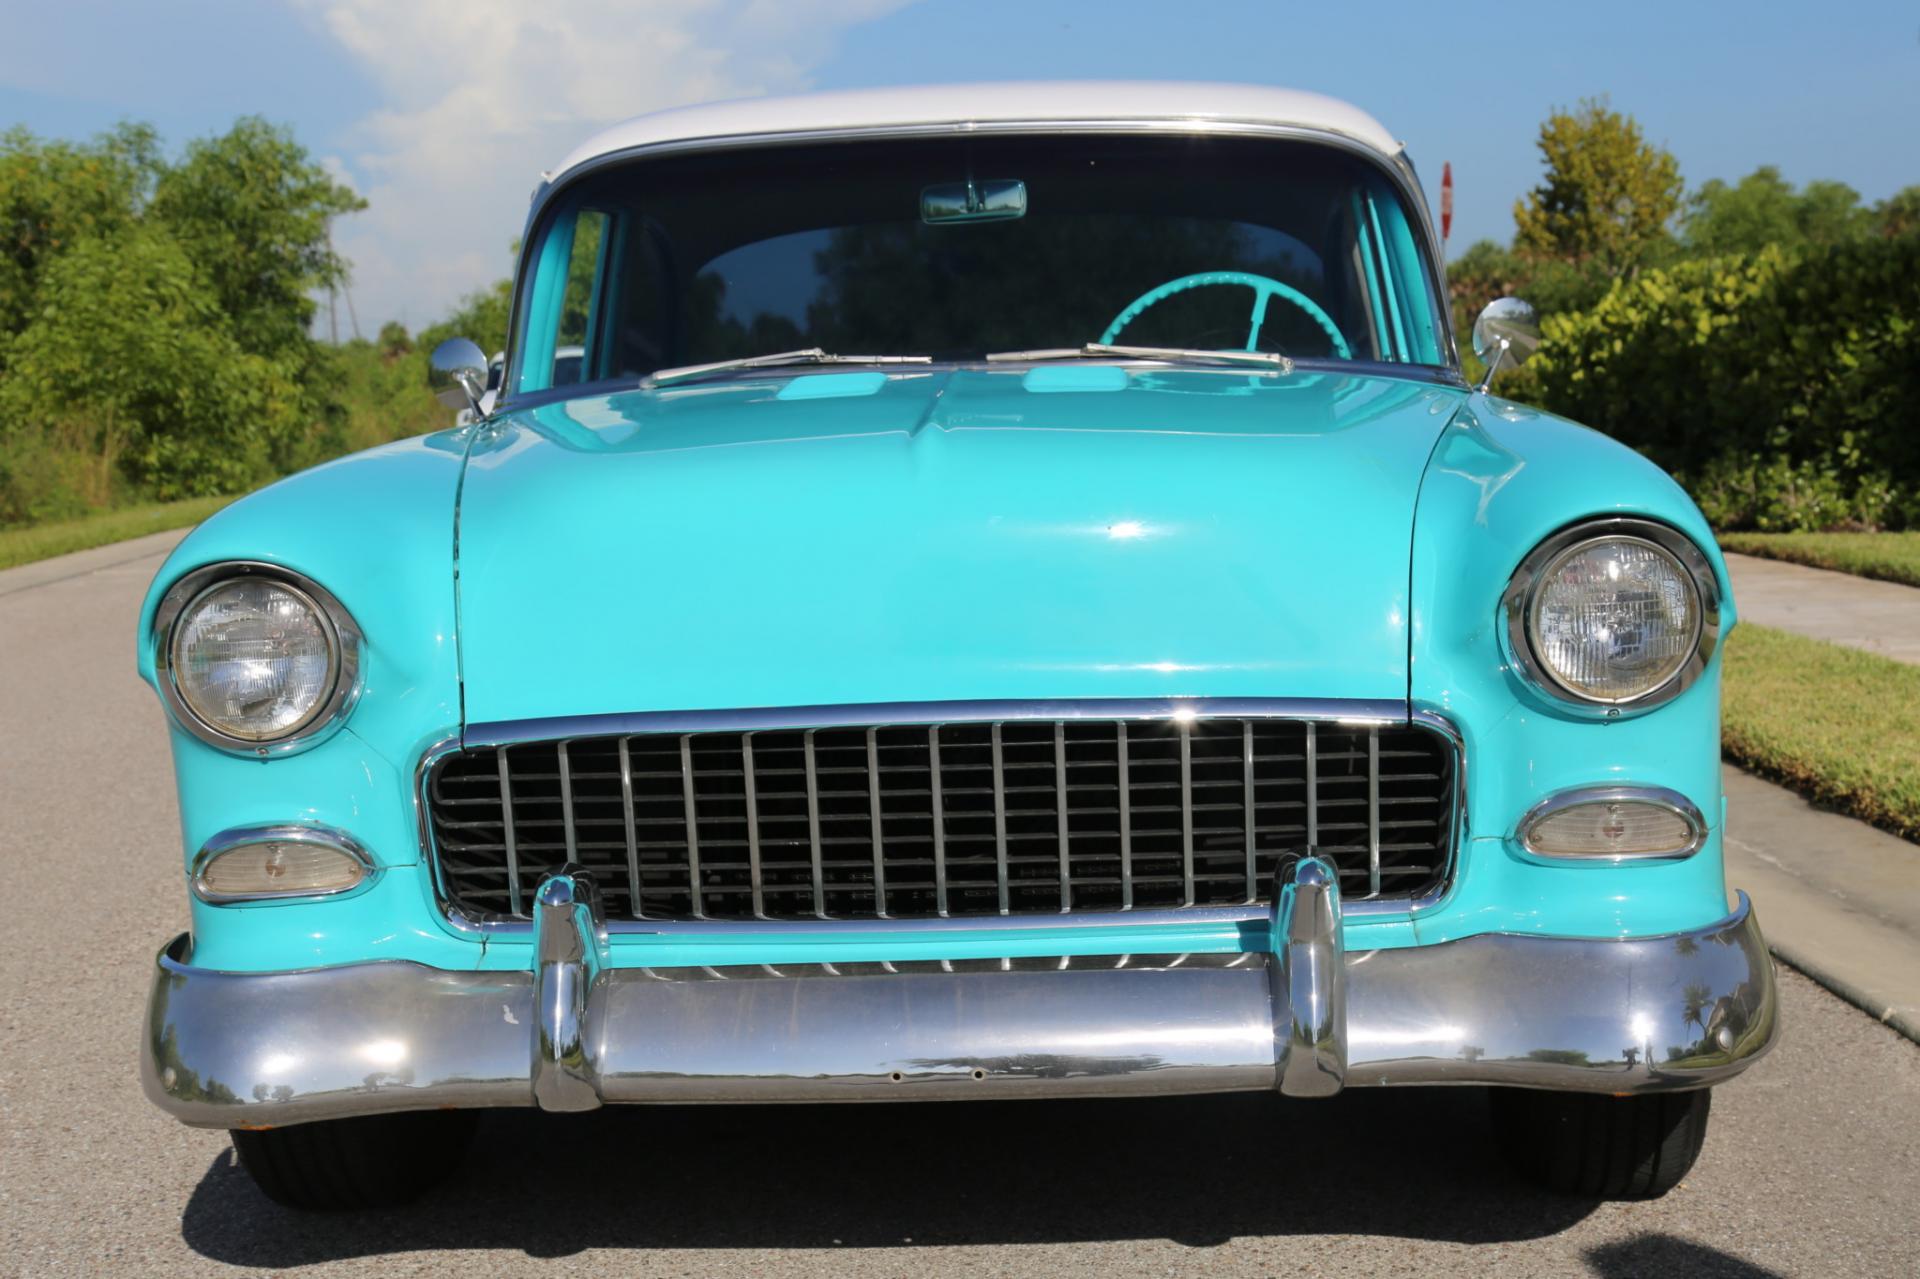 Used-1955-Chevrolet-Bel-Air.jpg